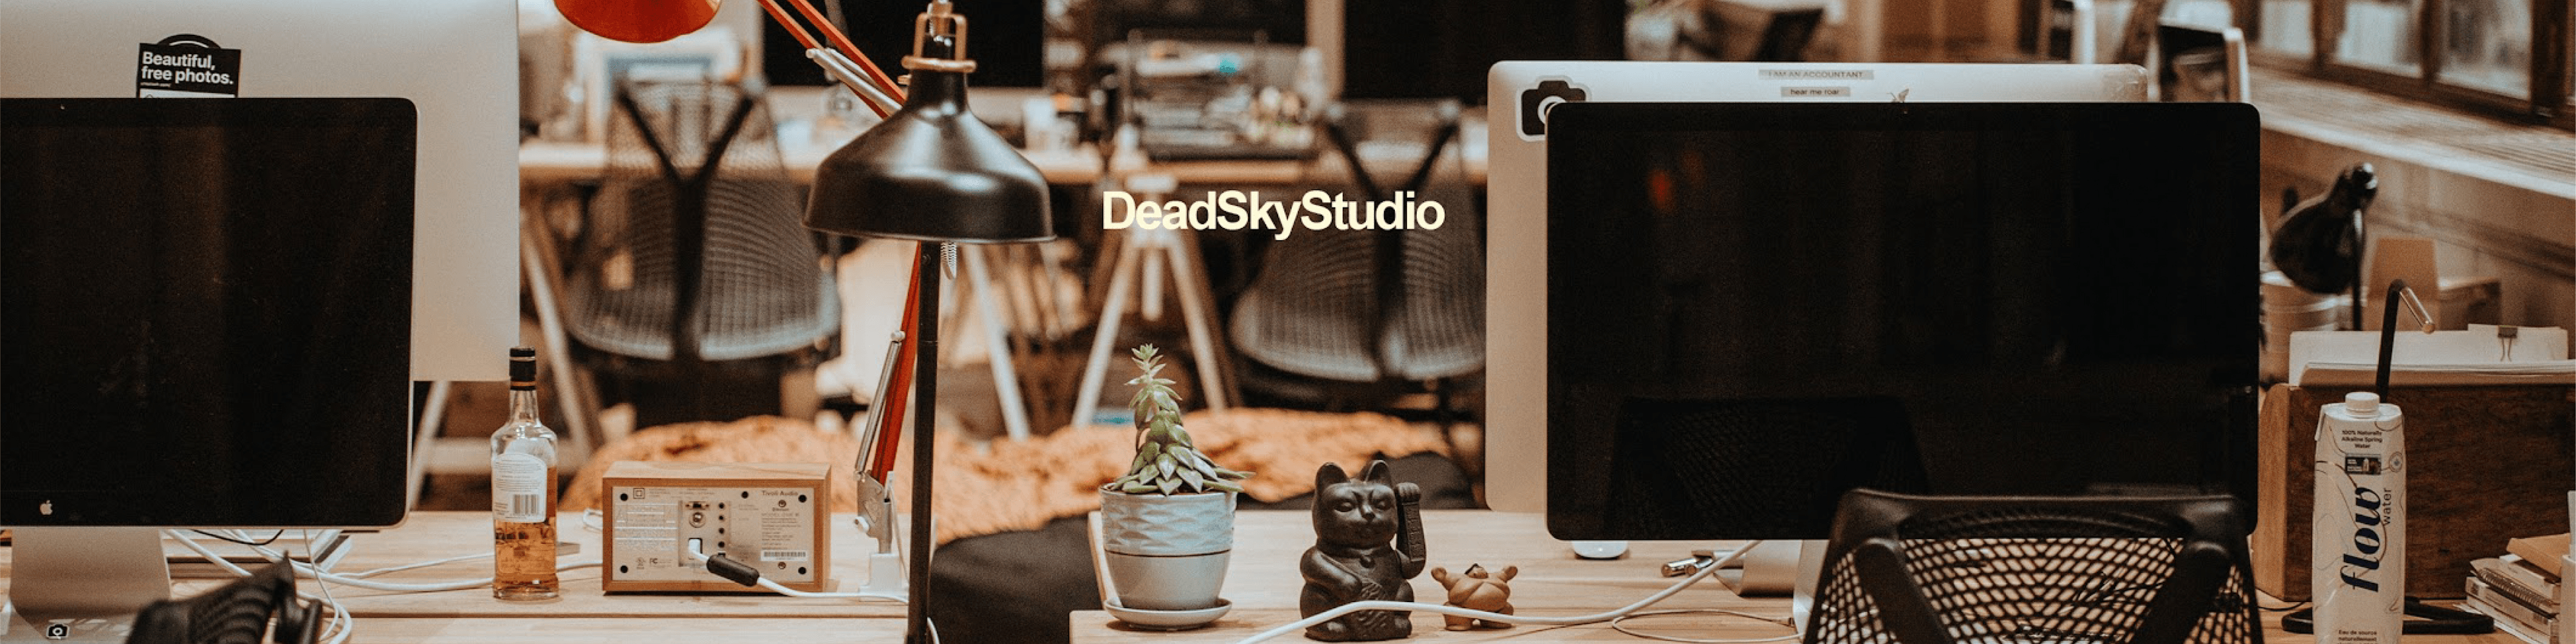 DeadSkyStudio banner